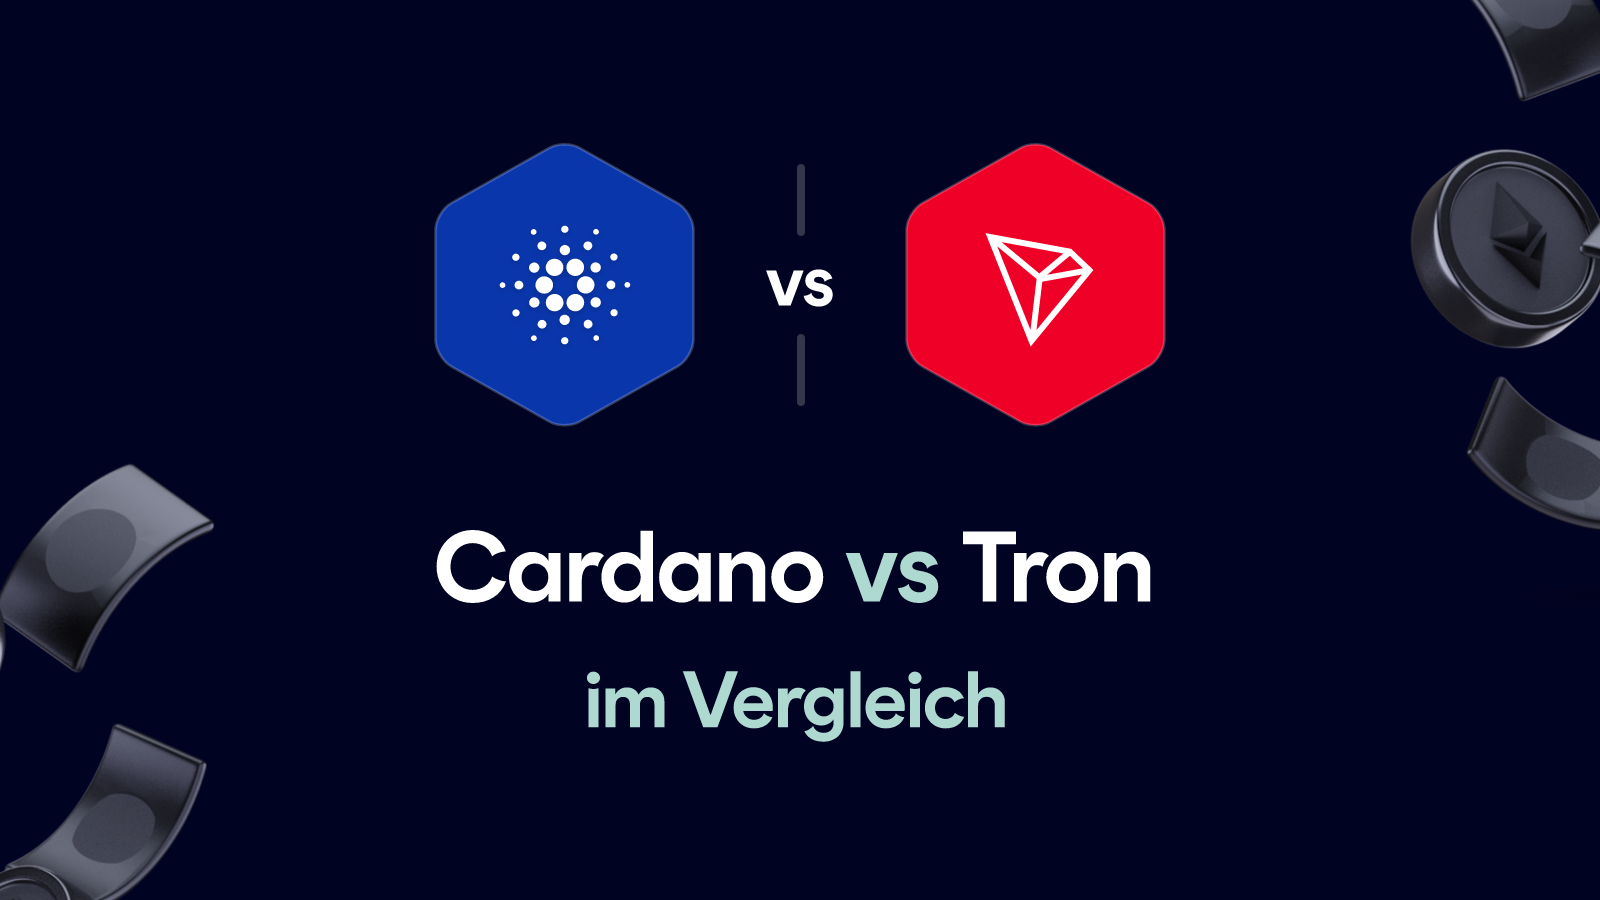 Cardano vs Tron